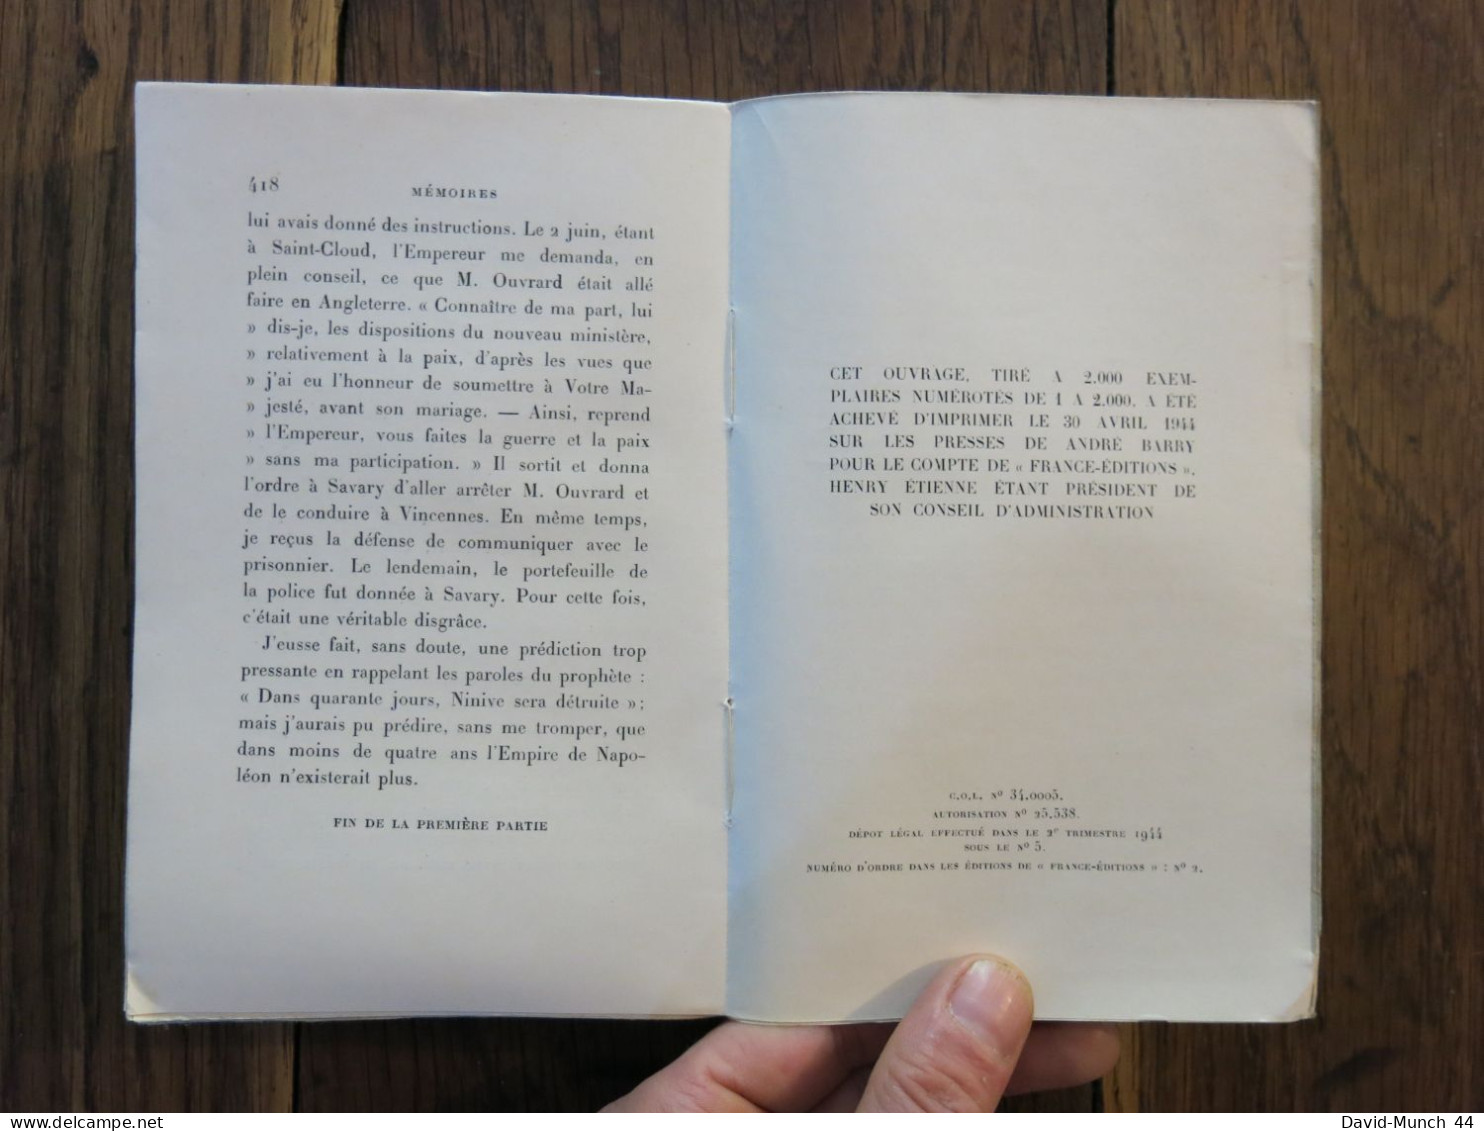 Les mémoires de Fouché Duc d'Otrante en deux tomes. France-Editions S.A. 1944. Exemplaires numérotés